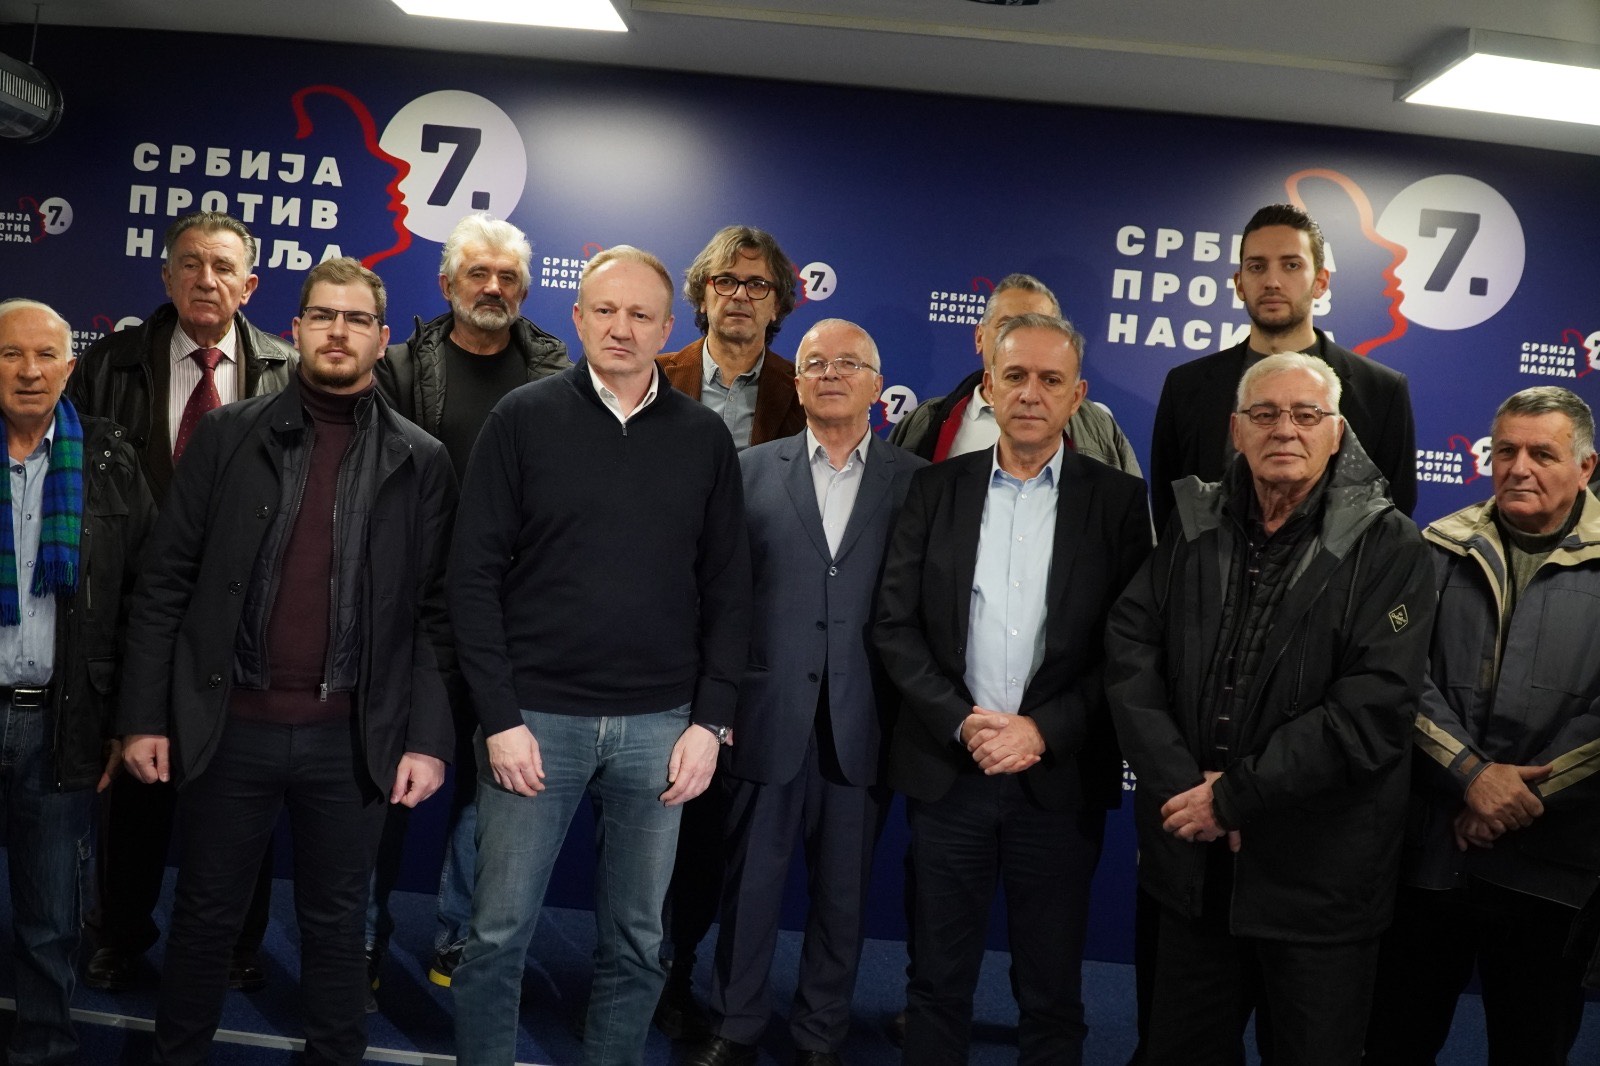 Predstavnici koalicije “Srbija protiv nasilja” i vojni penzioneri potpisali Sporazum o saradnji 2